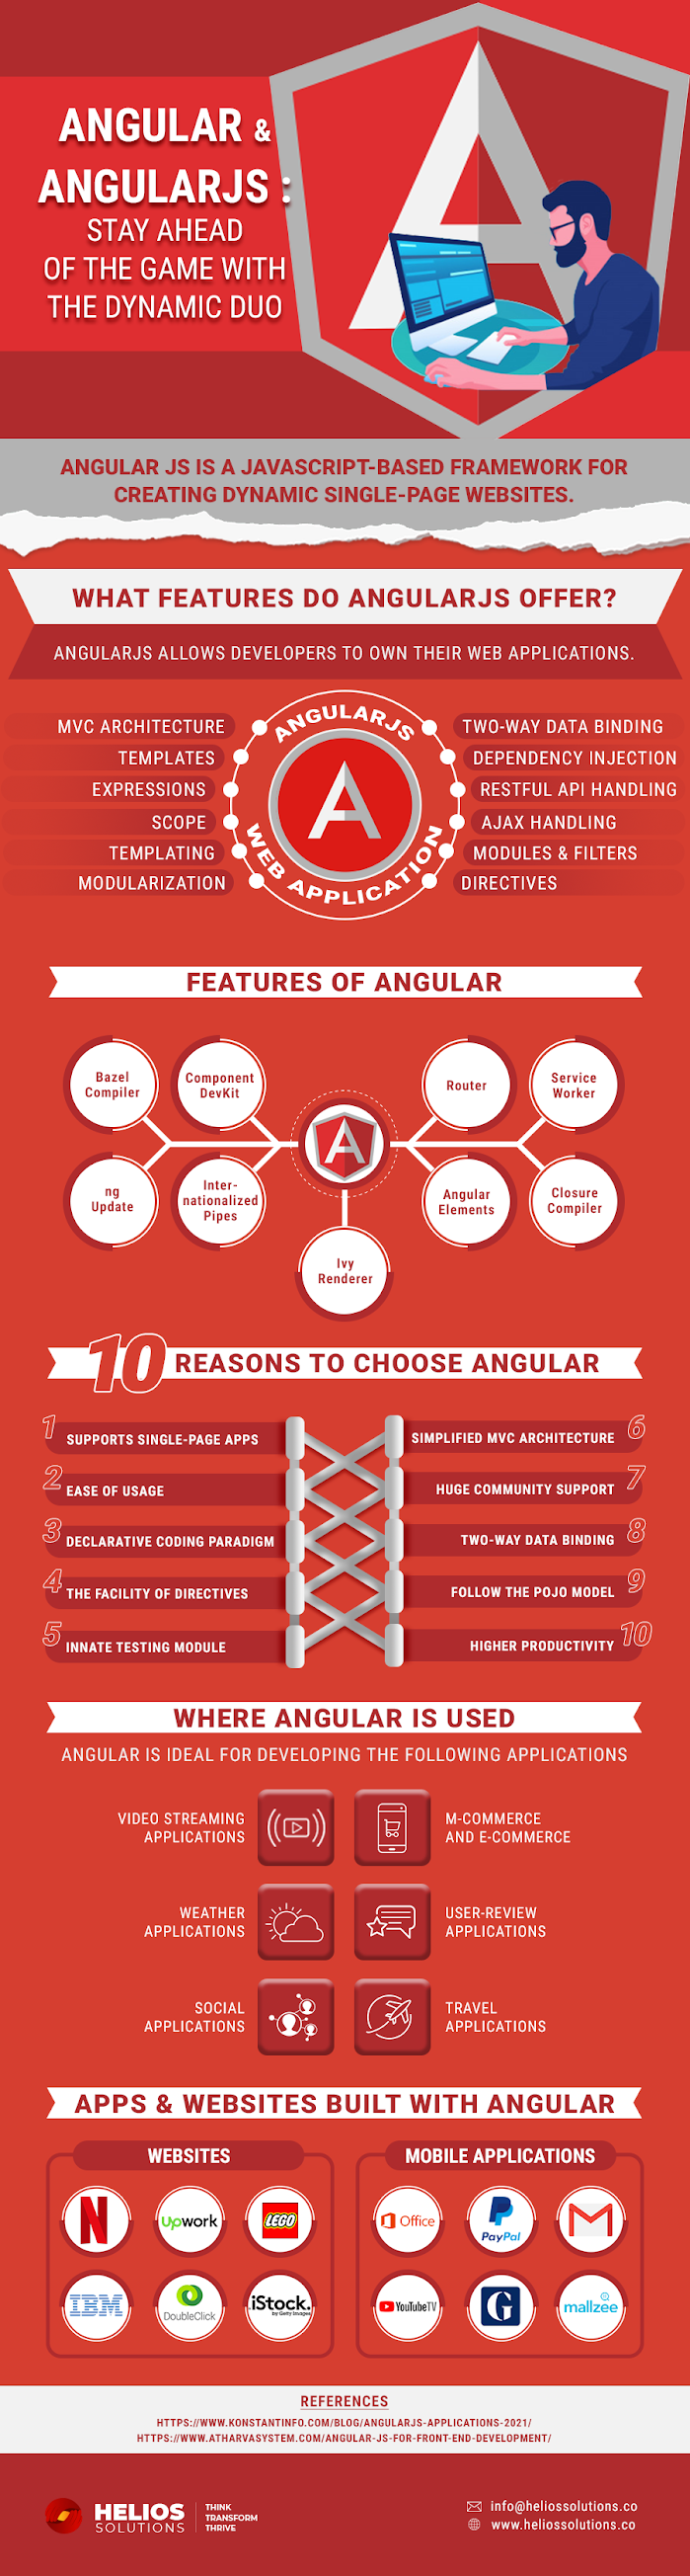 Angularjs & Angular: Bleiben Sie Mit Dem Dynamischen Duo Voraus